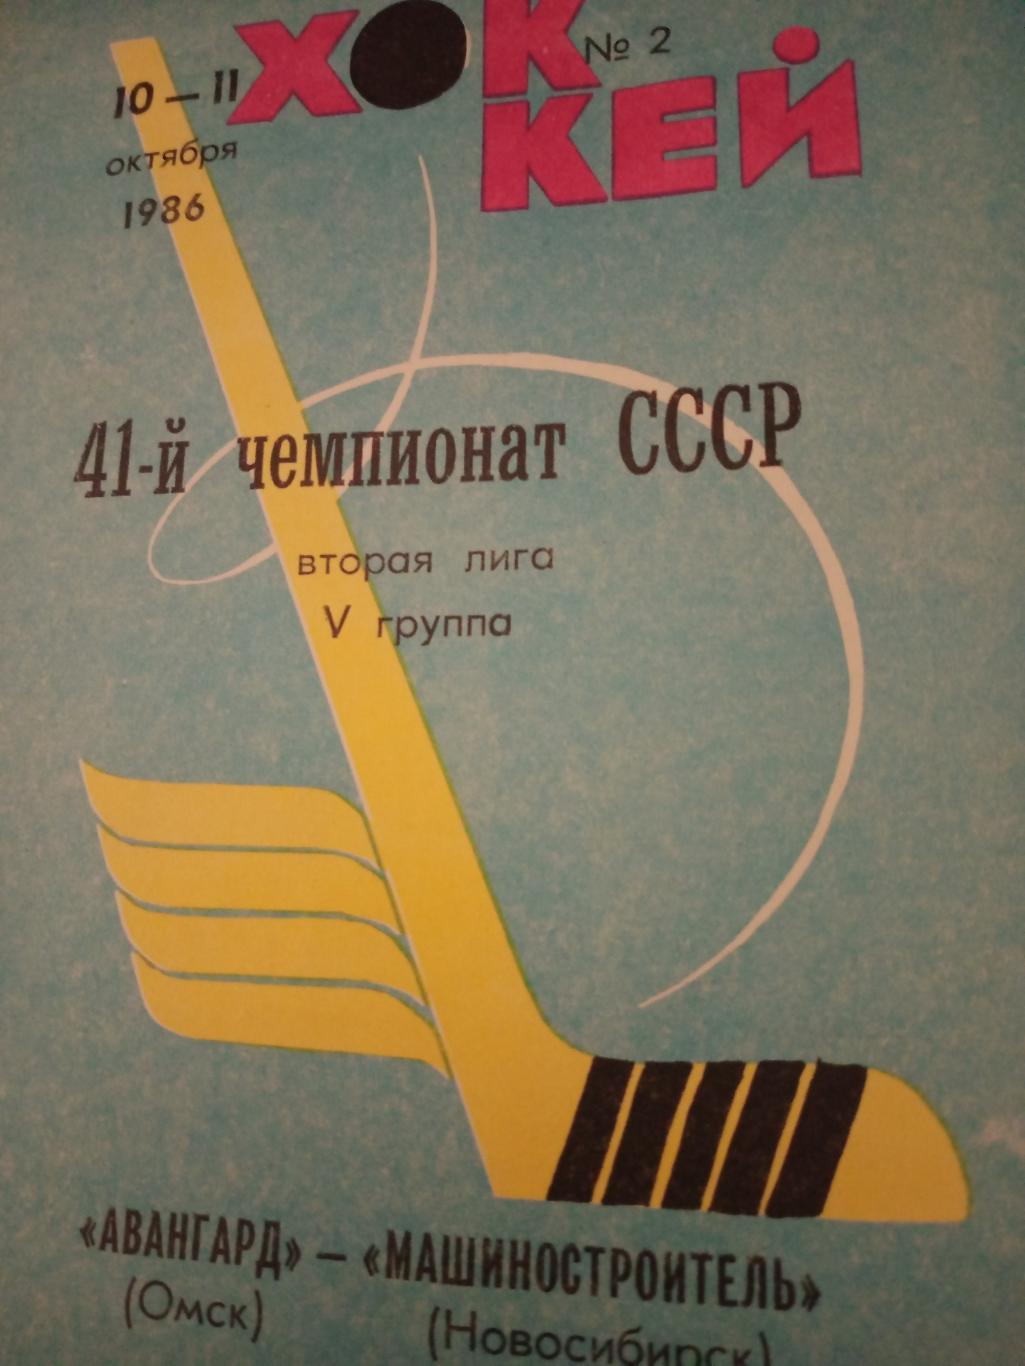 Авангард Омск - Машиностроитель Новосибирск. 10 и 11 октября 1986 год